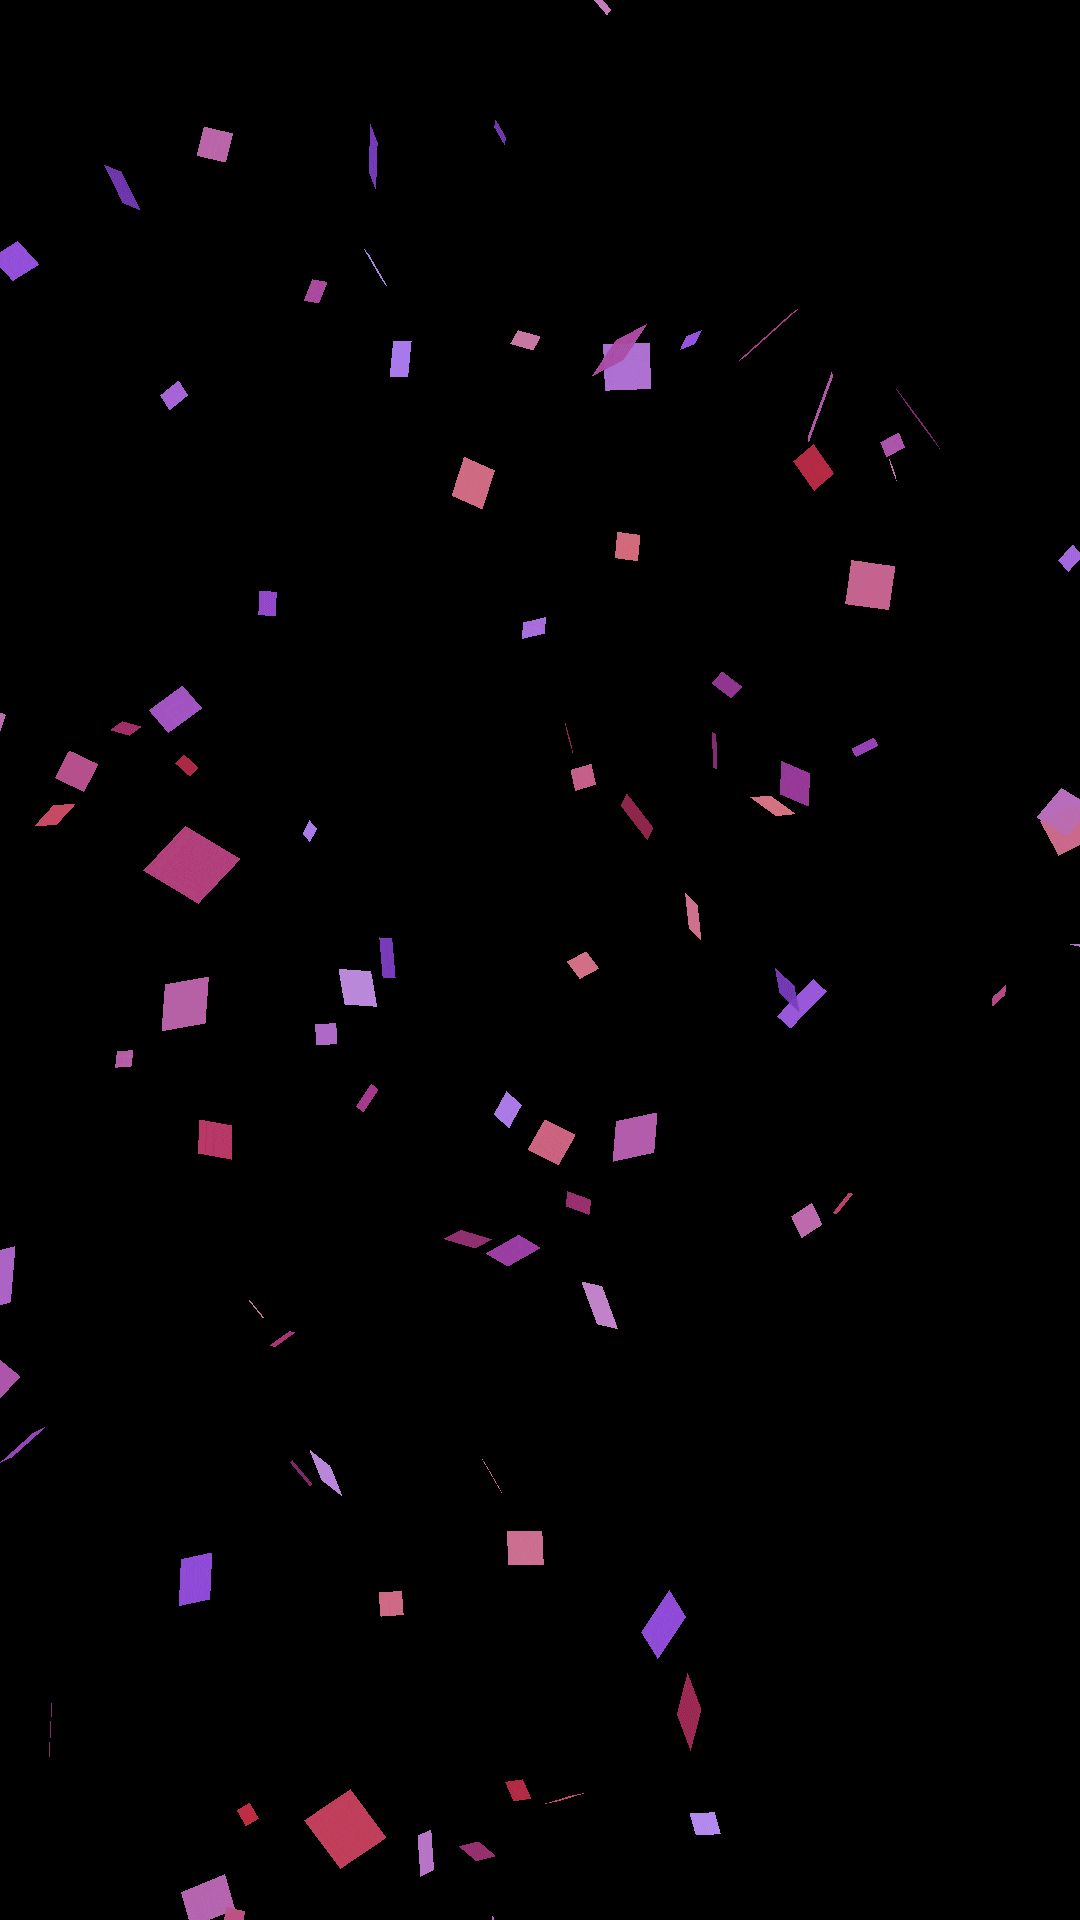 Confetti in formato GIF - 55 immagini animate